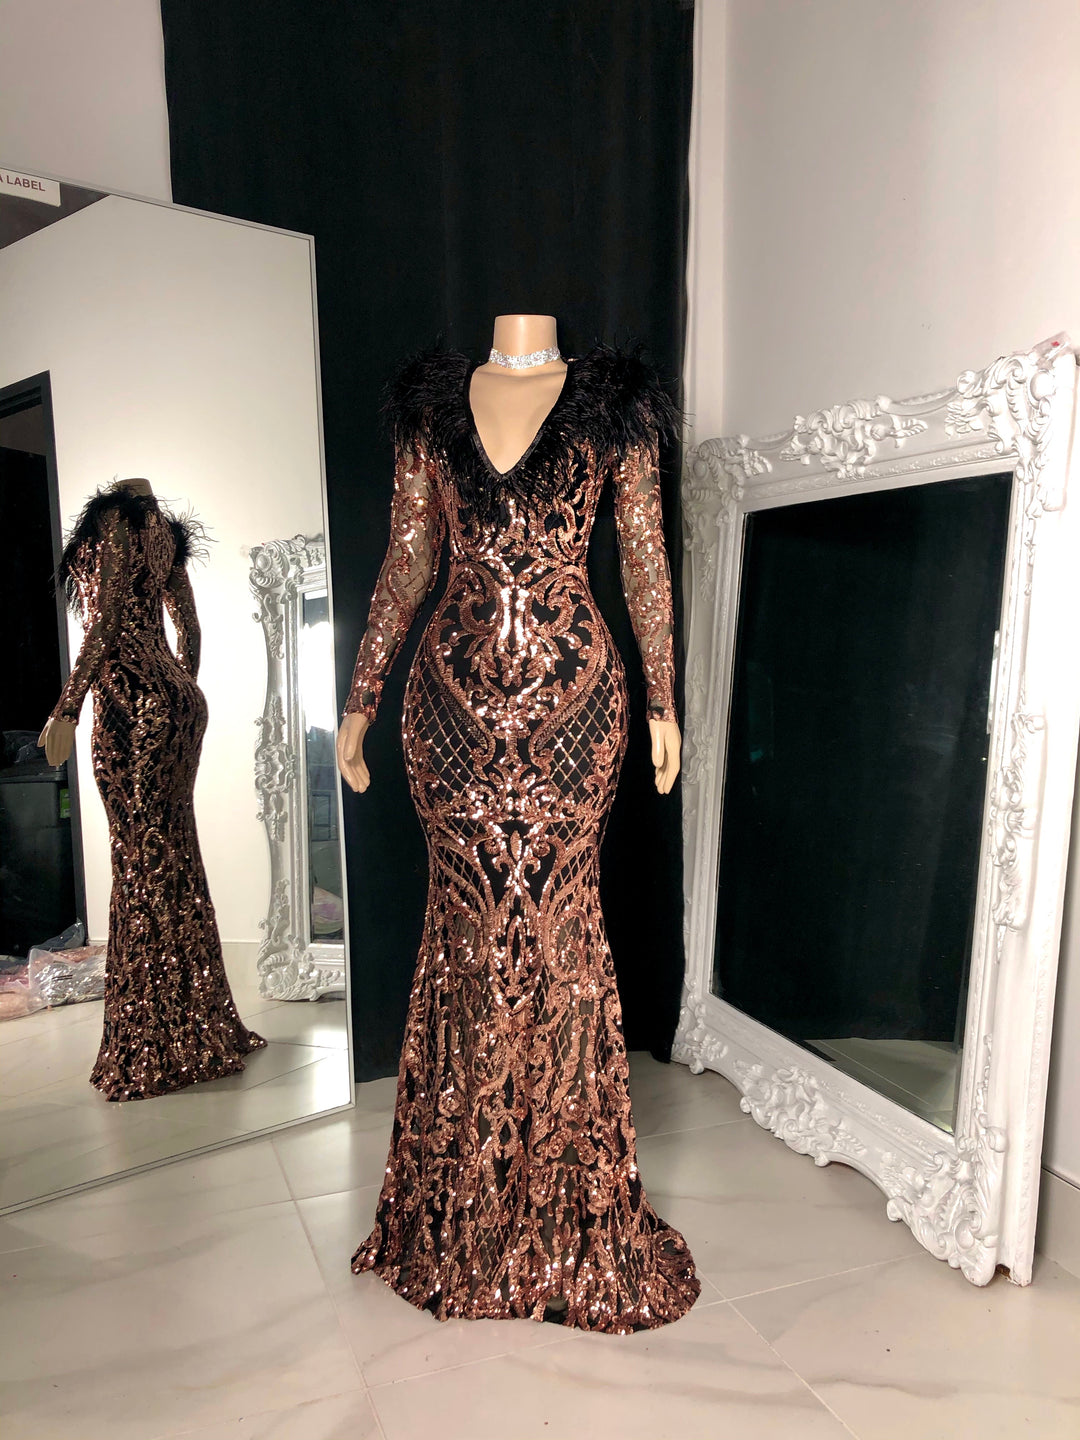 The KAROL Sequin Gown